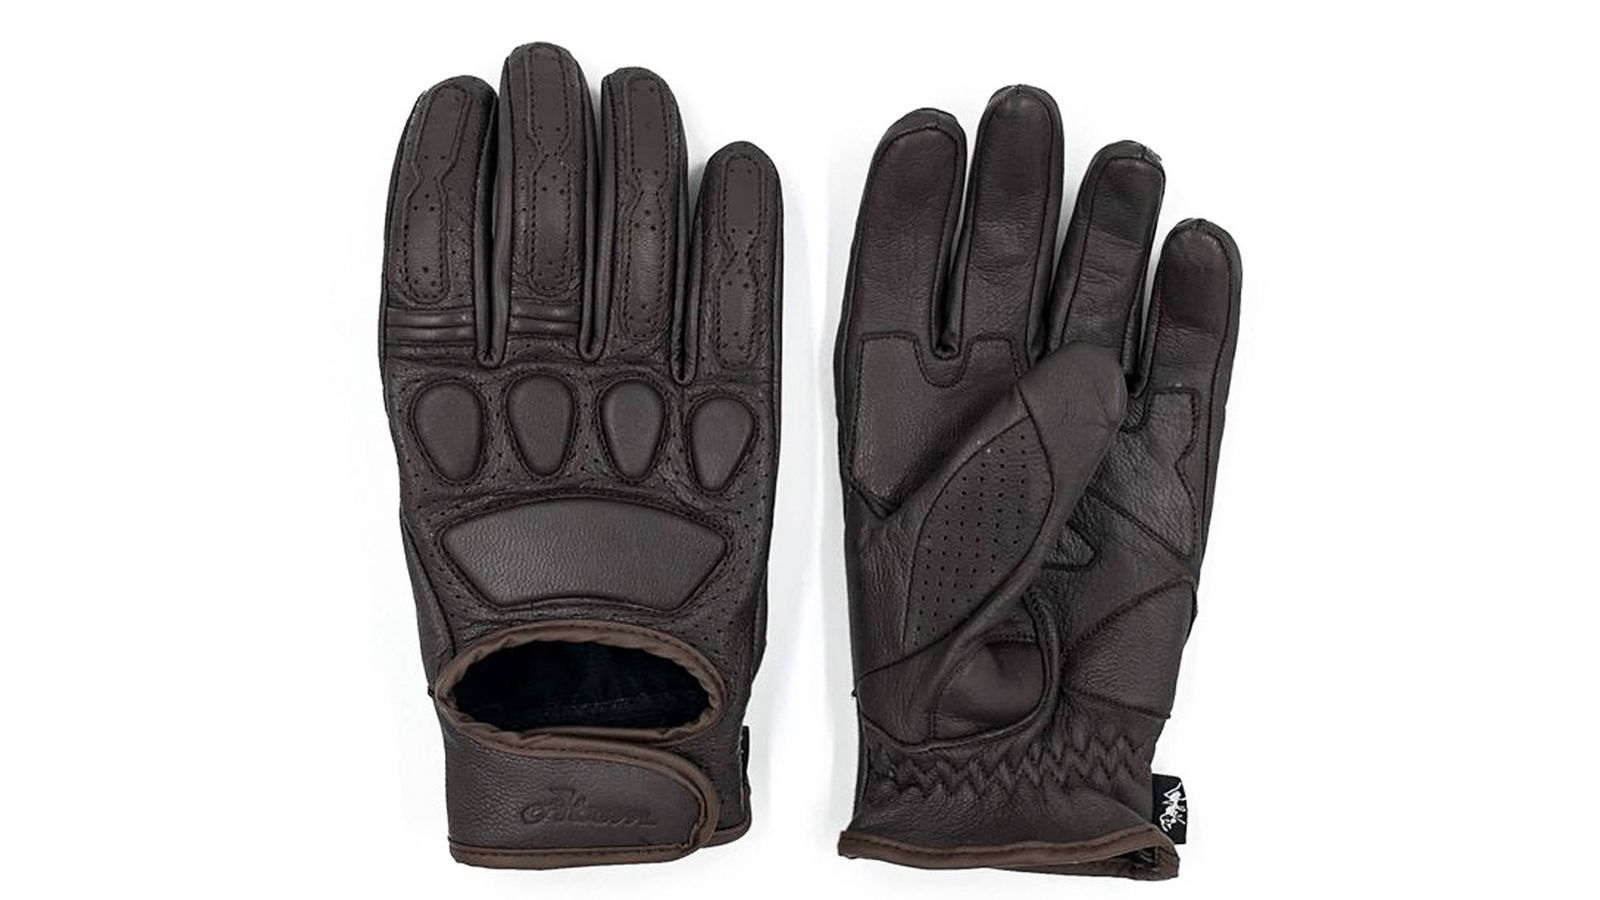 Los nuevos guantes retro de ATOM